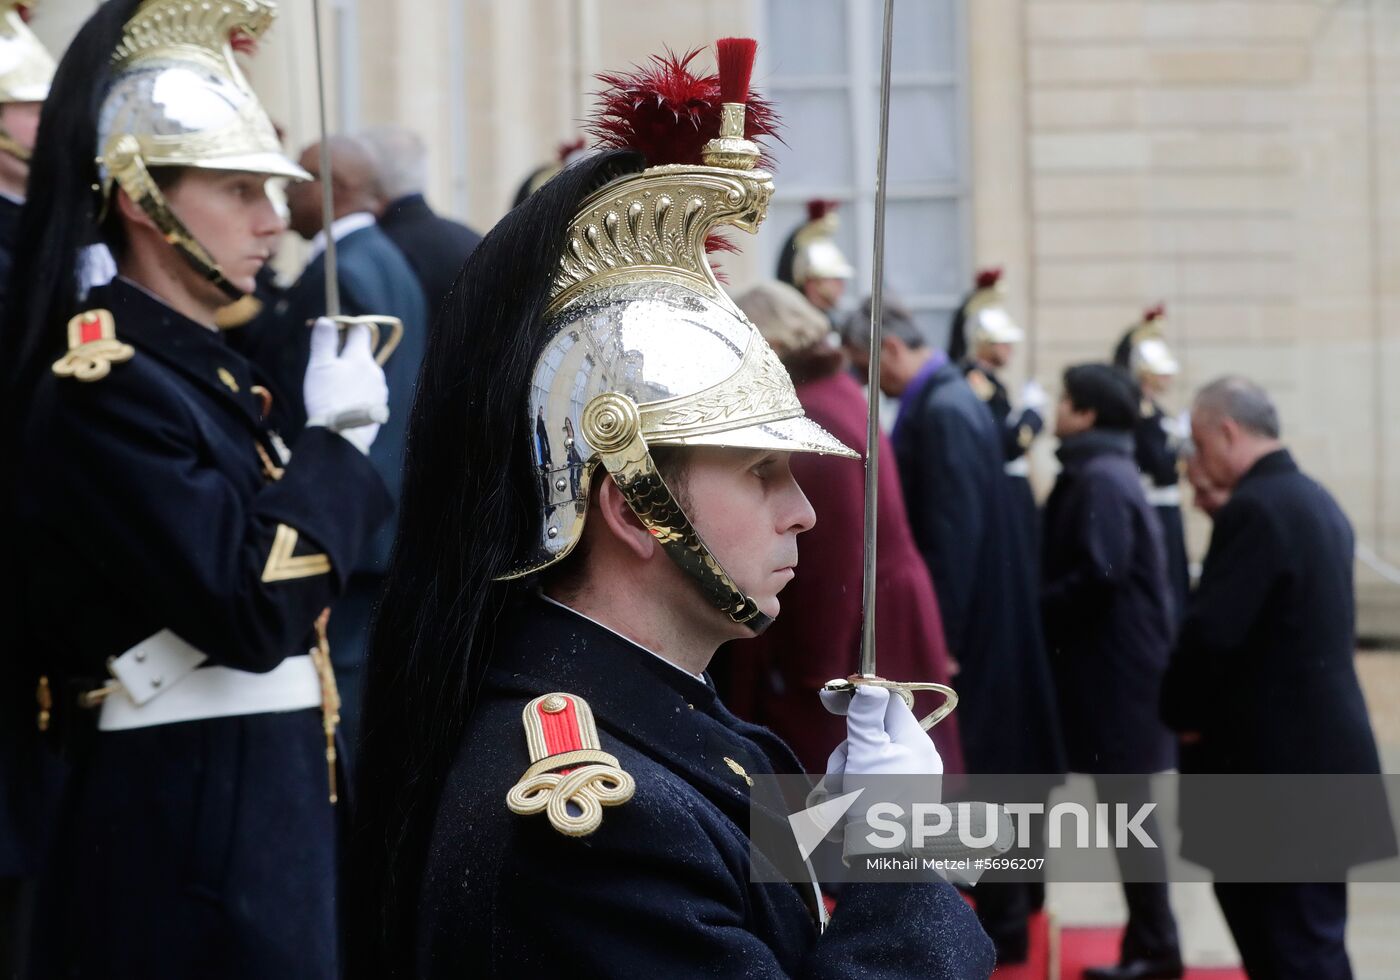 Ceremonies to mark centenary of Armistice Day in Paris